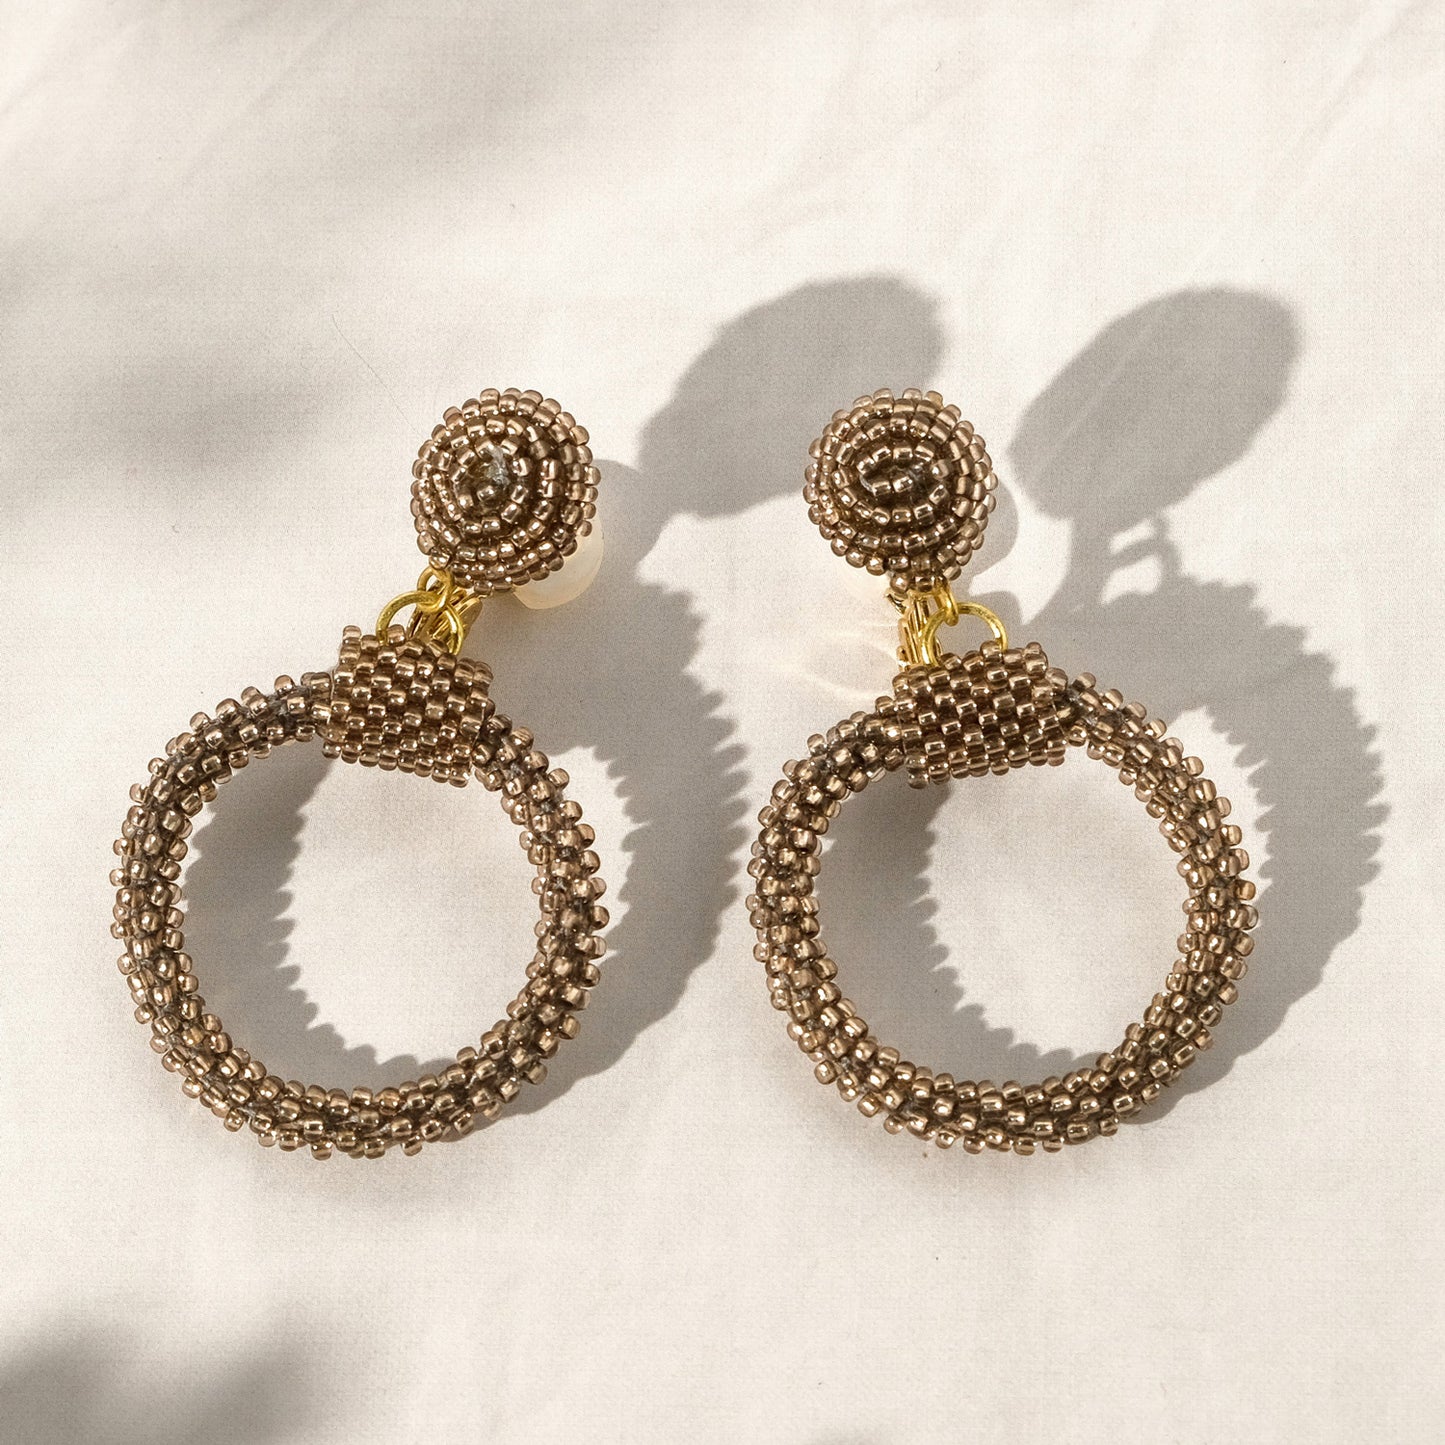 Bead hoop earrings